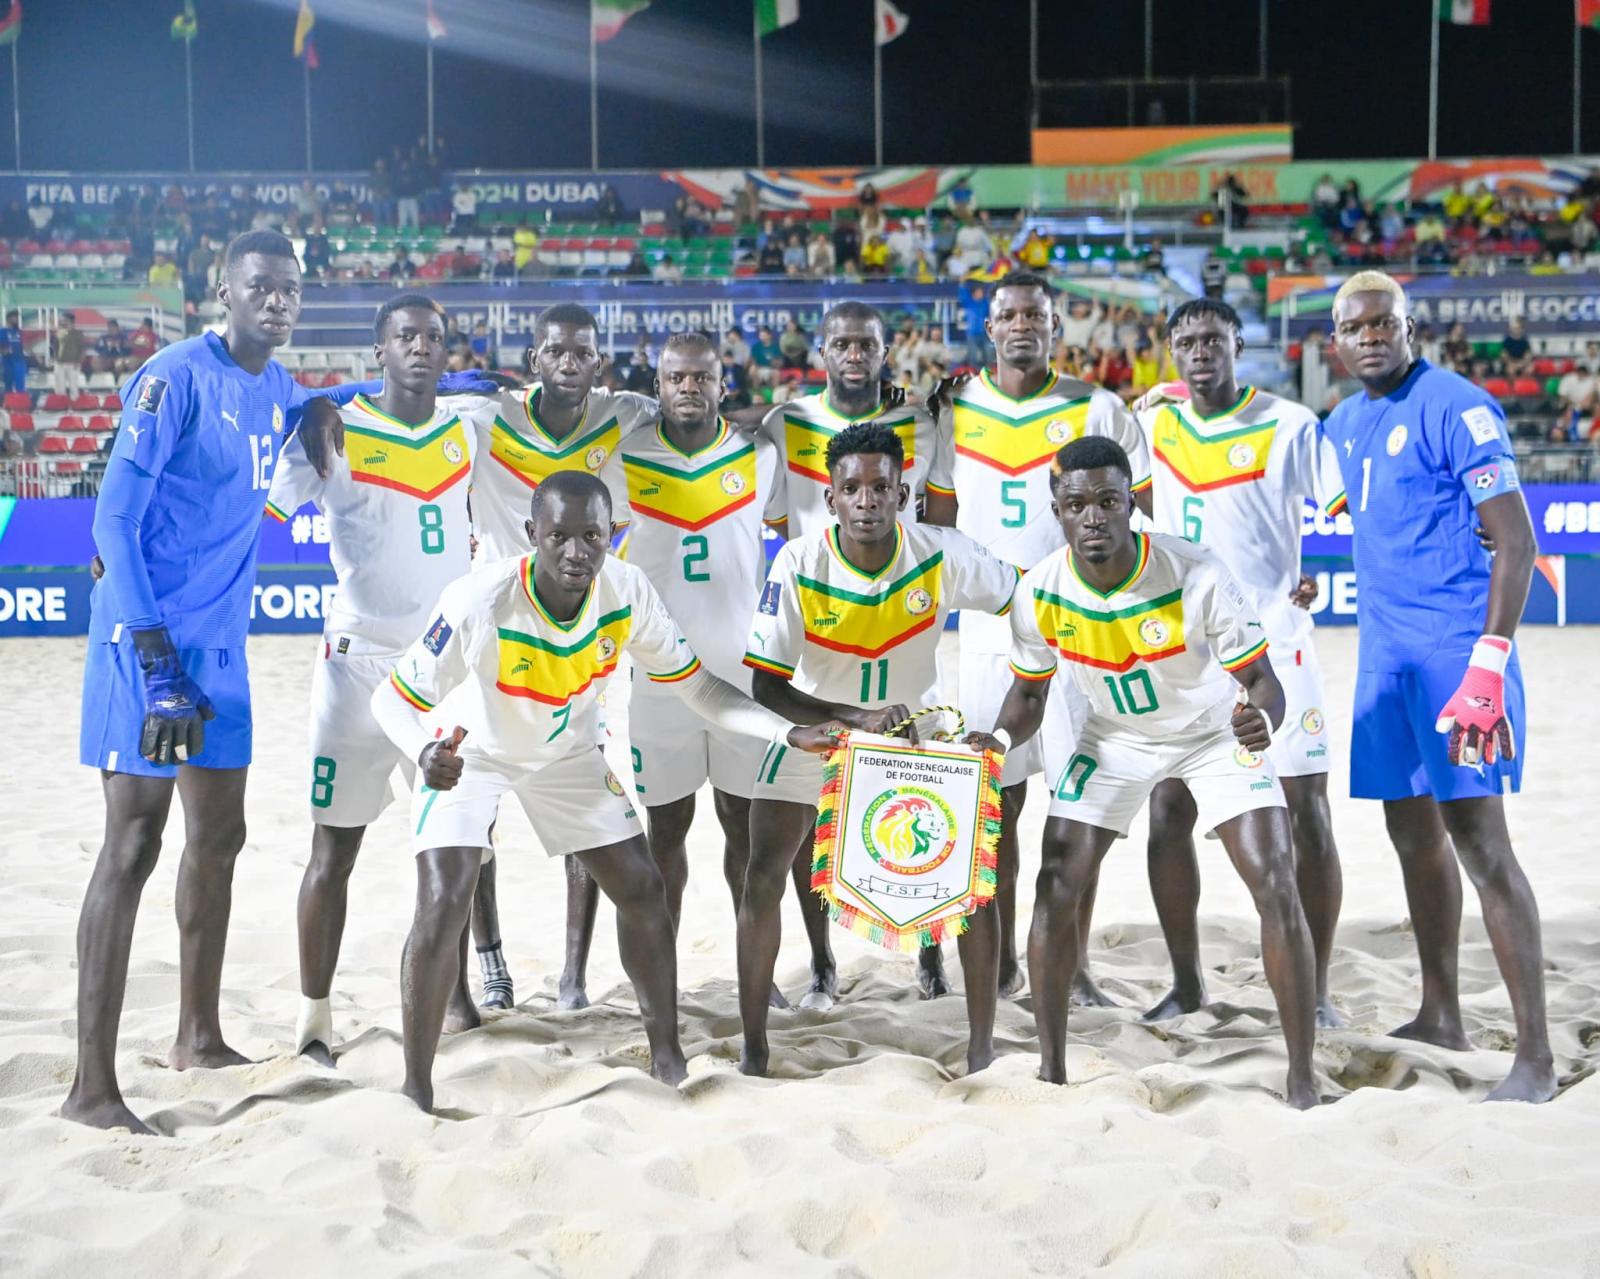 Beach soccer : Matchs amicaux Sénégal - Mauritanie les 5 et 6 juillet